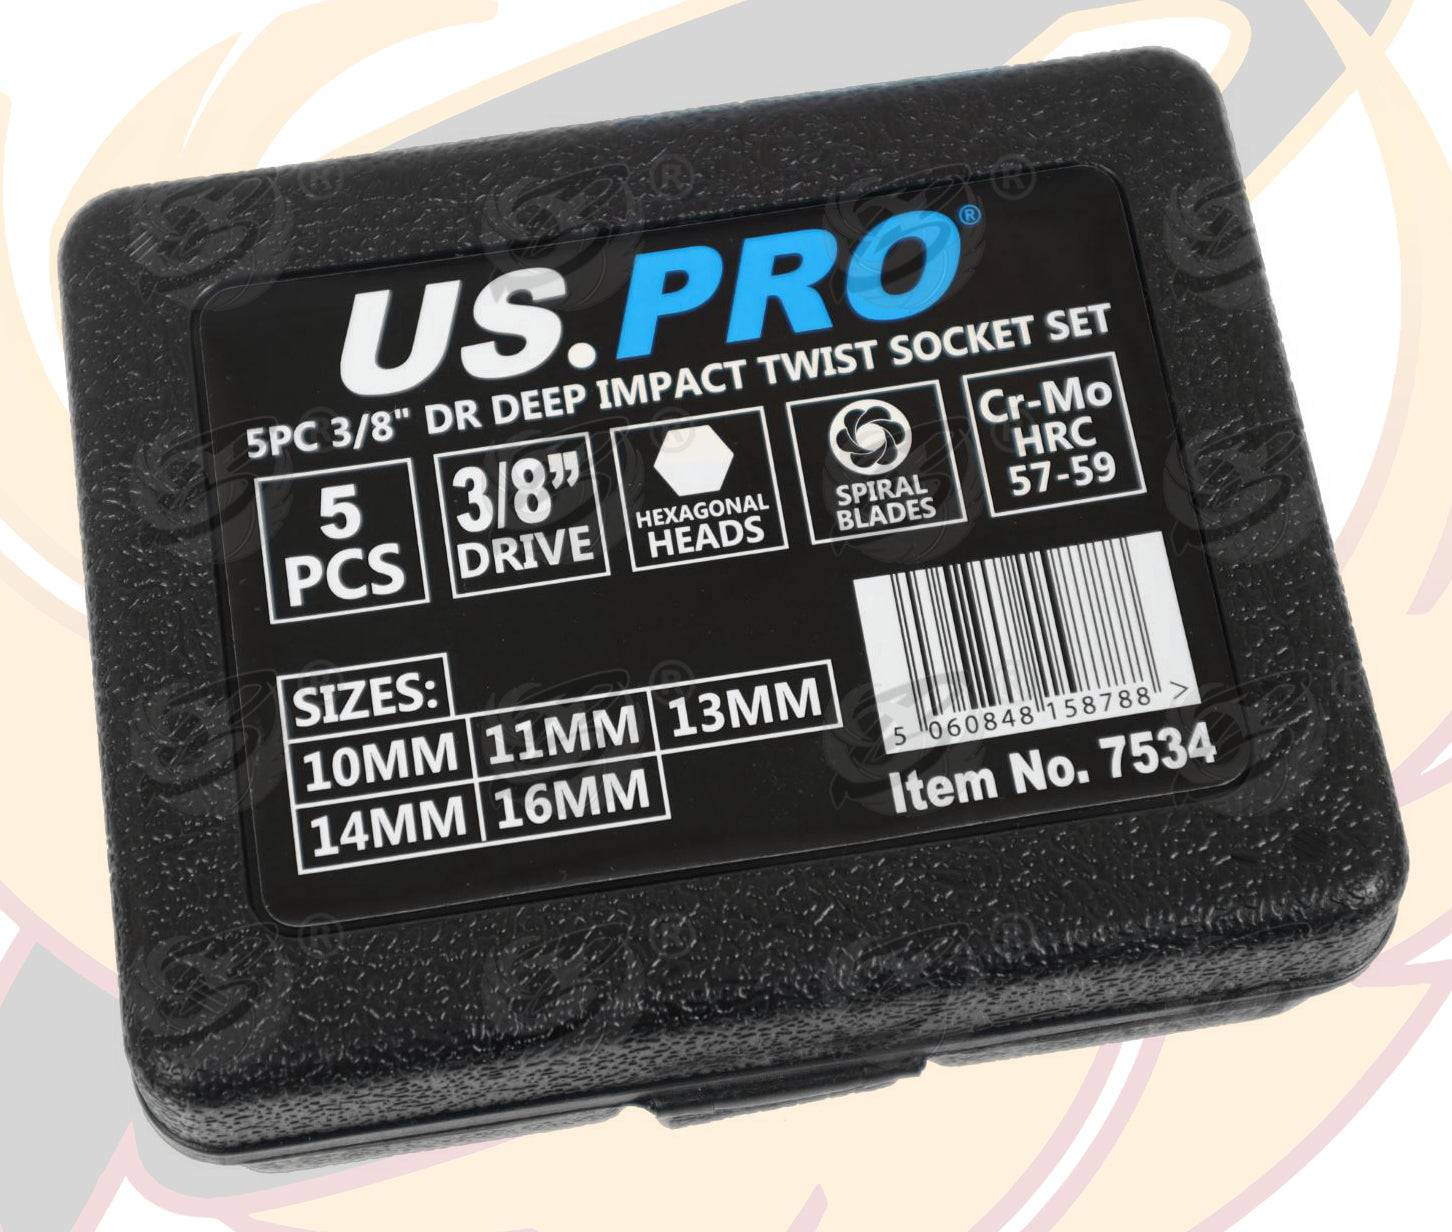 US PRO 5PCS 3/8" DRIVE IMPACT TWIST SOCKETS 10MM - 16MM